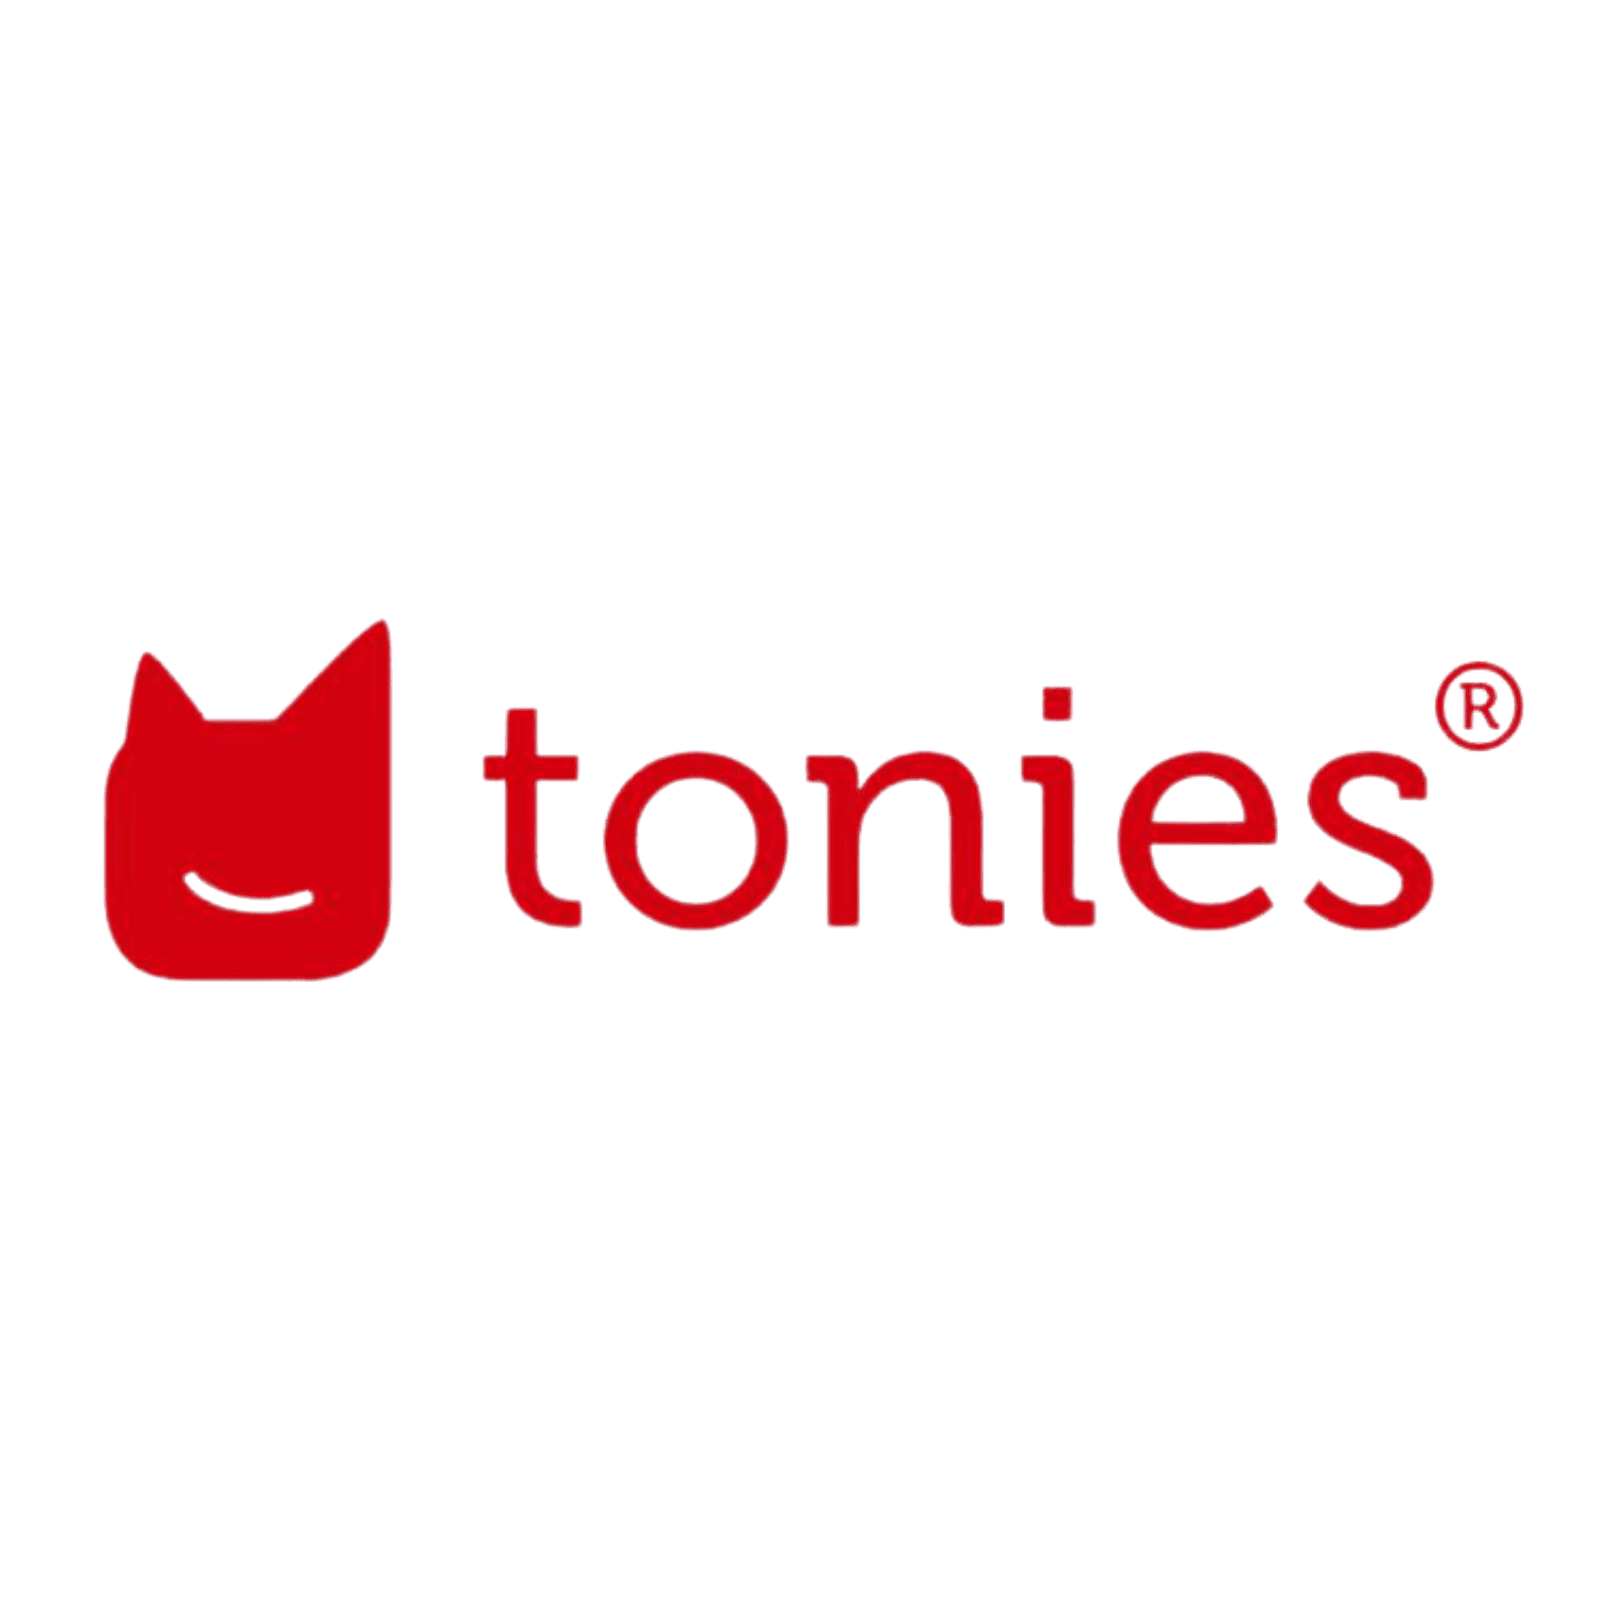 tonies-logo